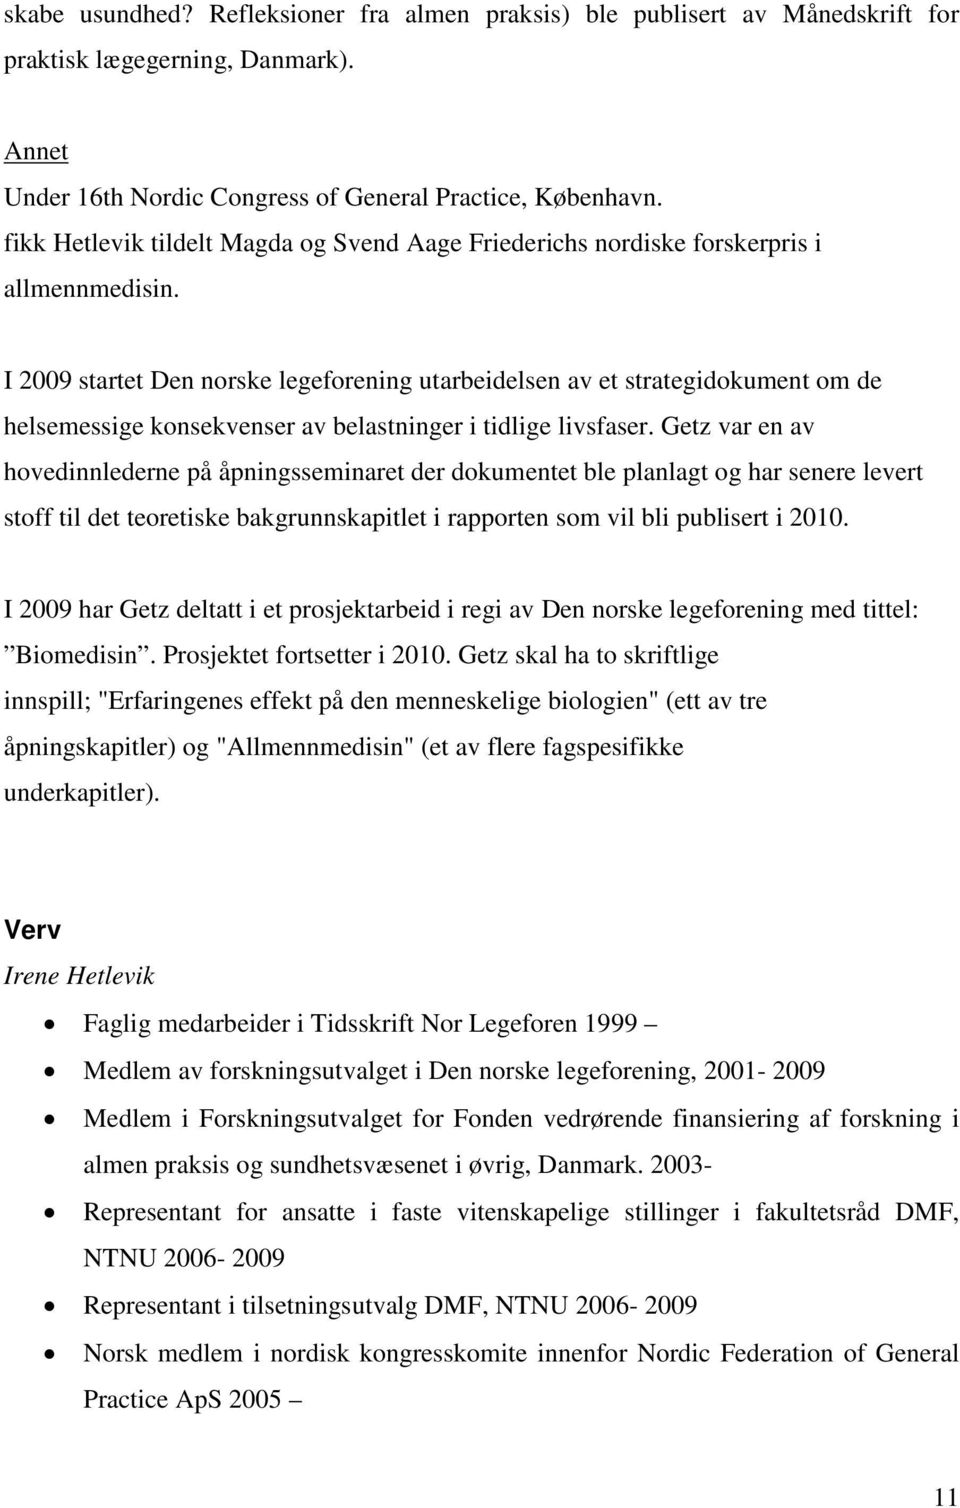 I 2009 startet Den norske legeforening utarbeidelsen av et strategidokument om de helsemessige konsekvenser av belastninger i tidlige livsfaser.